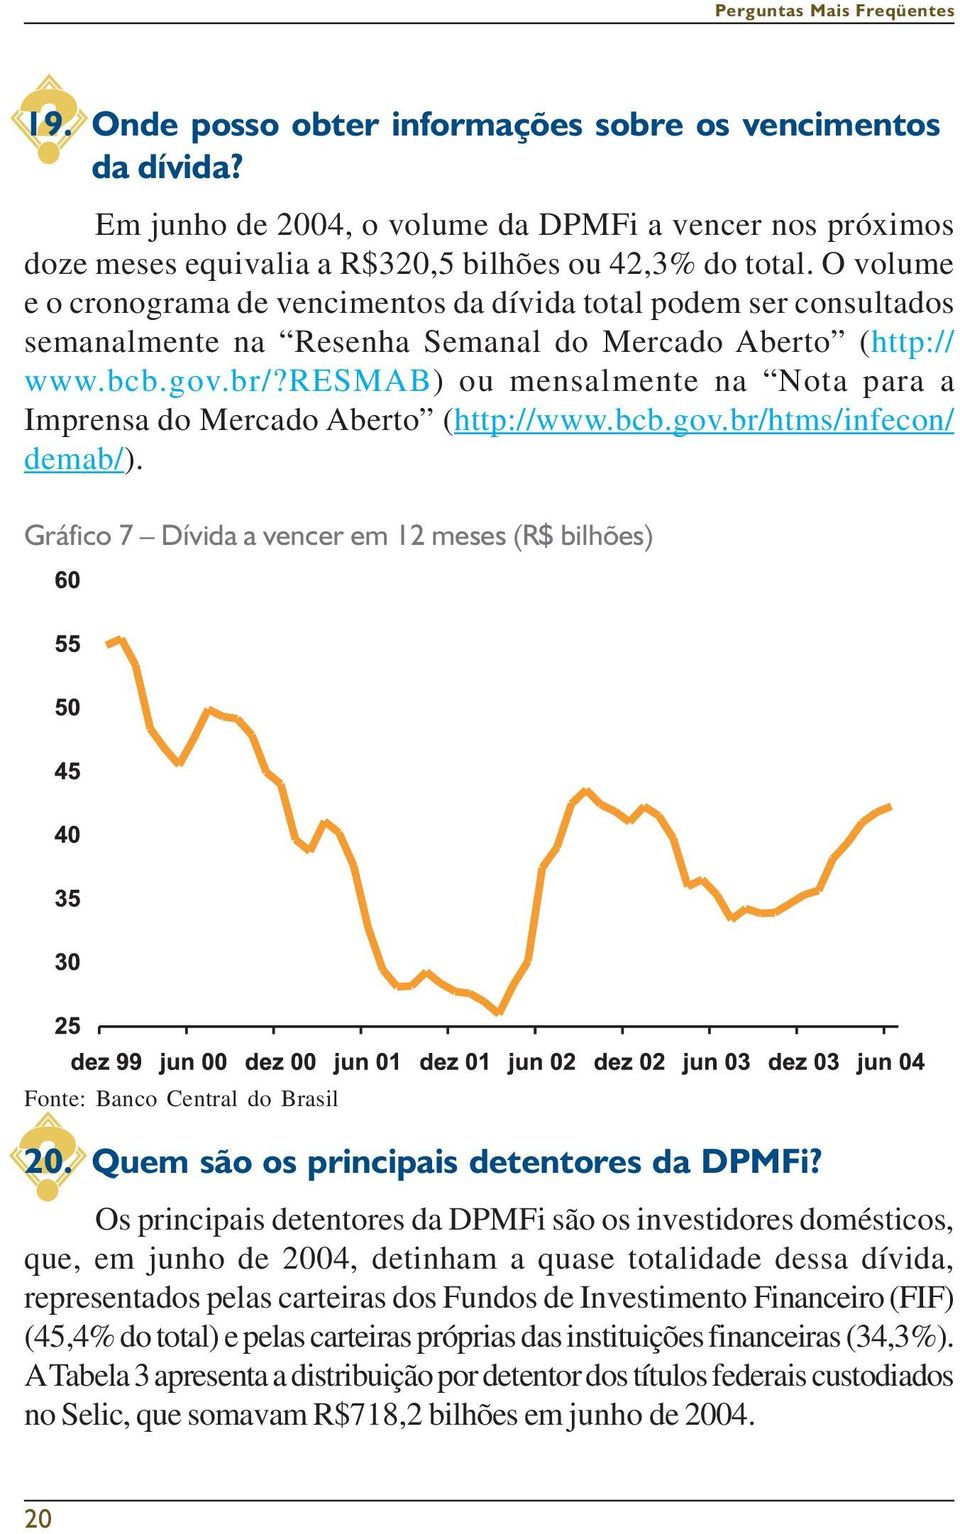 resmab) ou mensalmente na Nota para a Imprensa do Mercado Aberto (http://www.bcb.gov.br/htms/infecon/ demab/). Gráfico 7 Dívida a vencer em 12 meses (R$ bilhões) Fonte: Banco Central do Brasil 20.